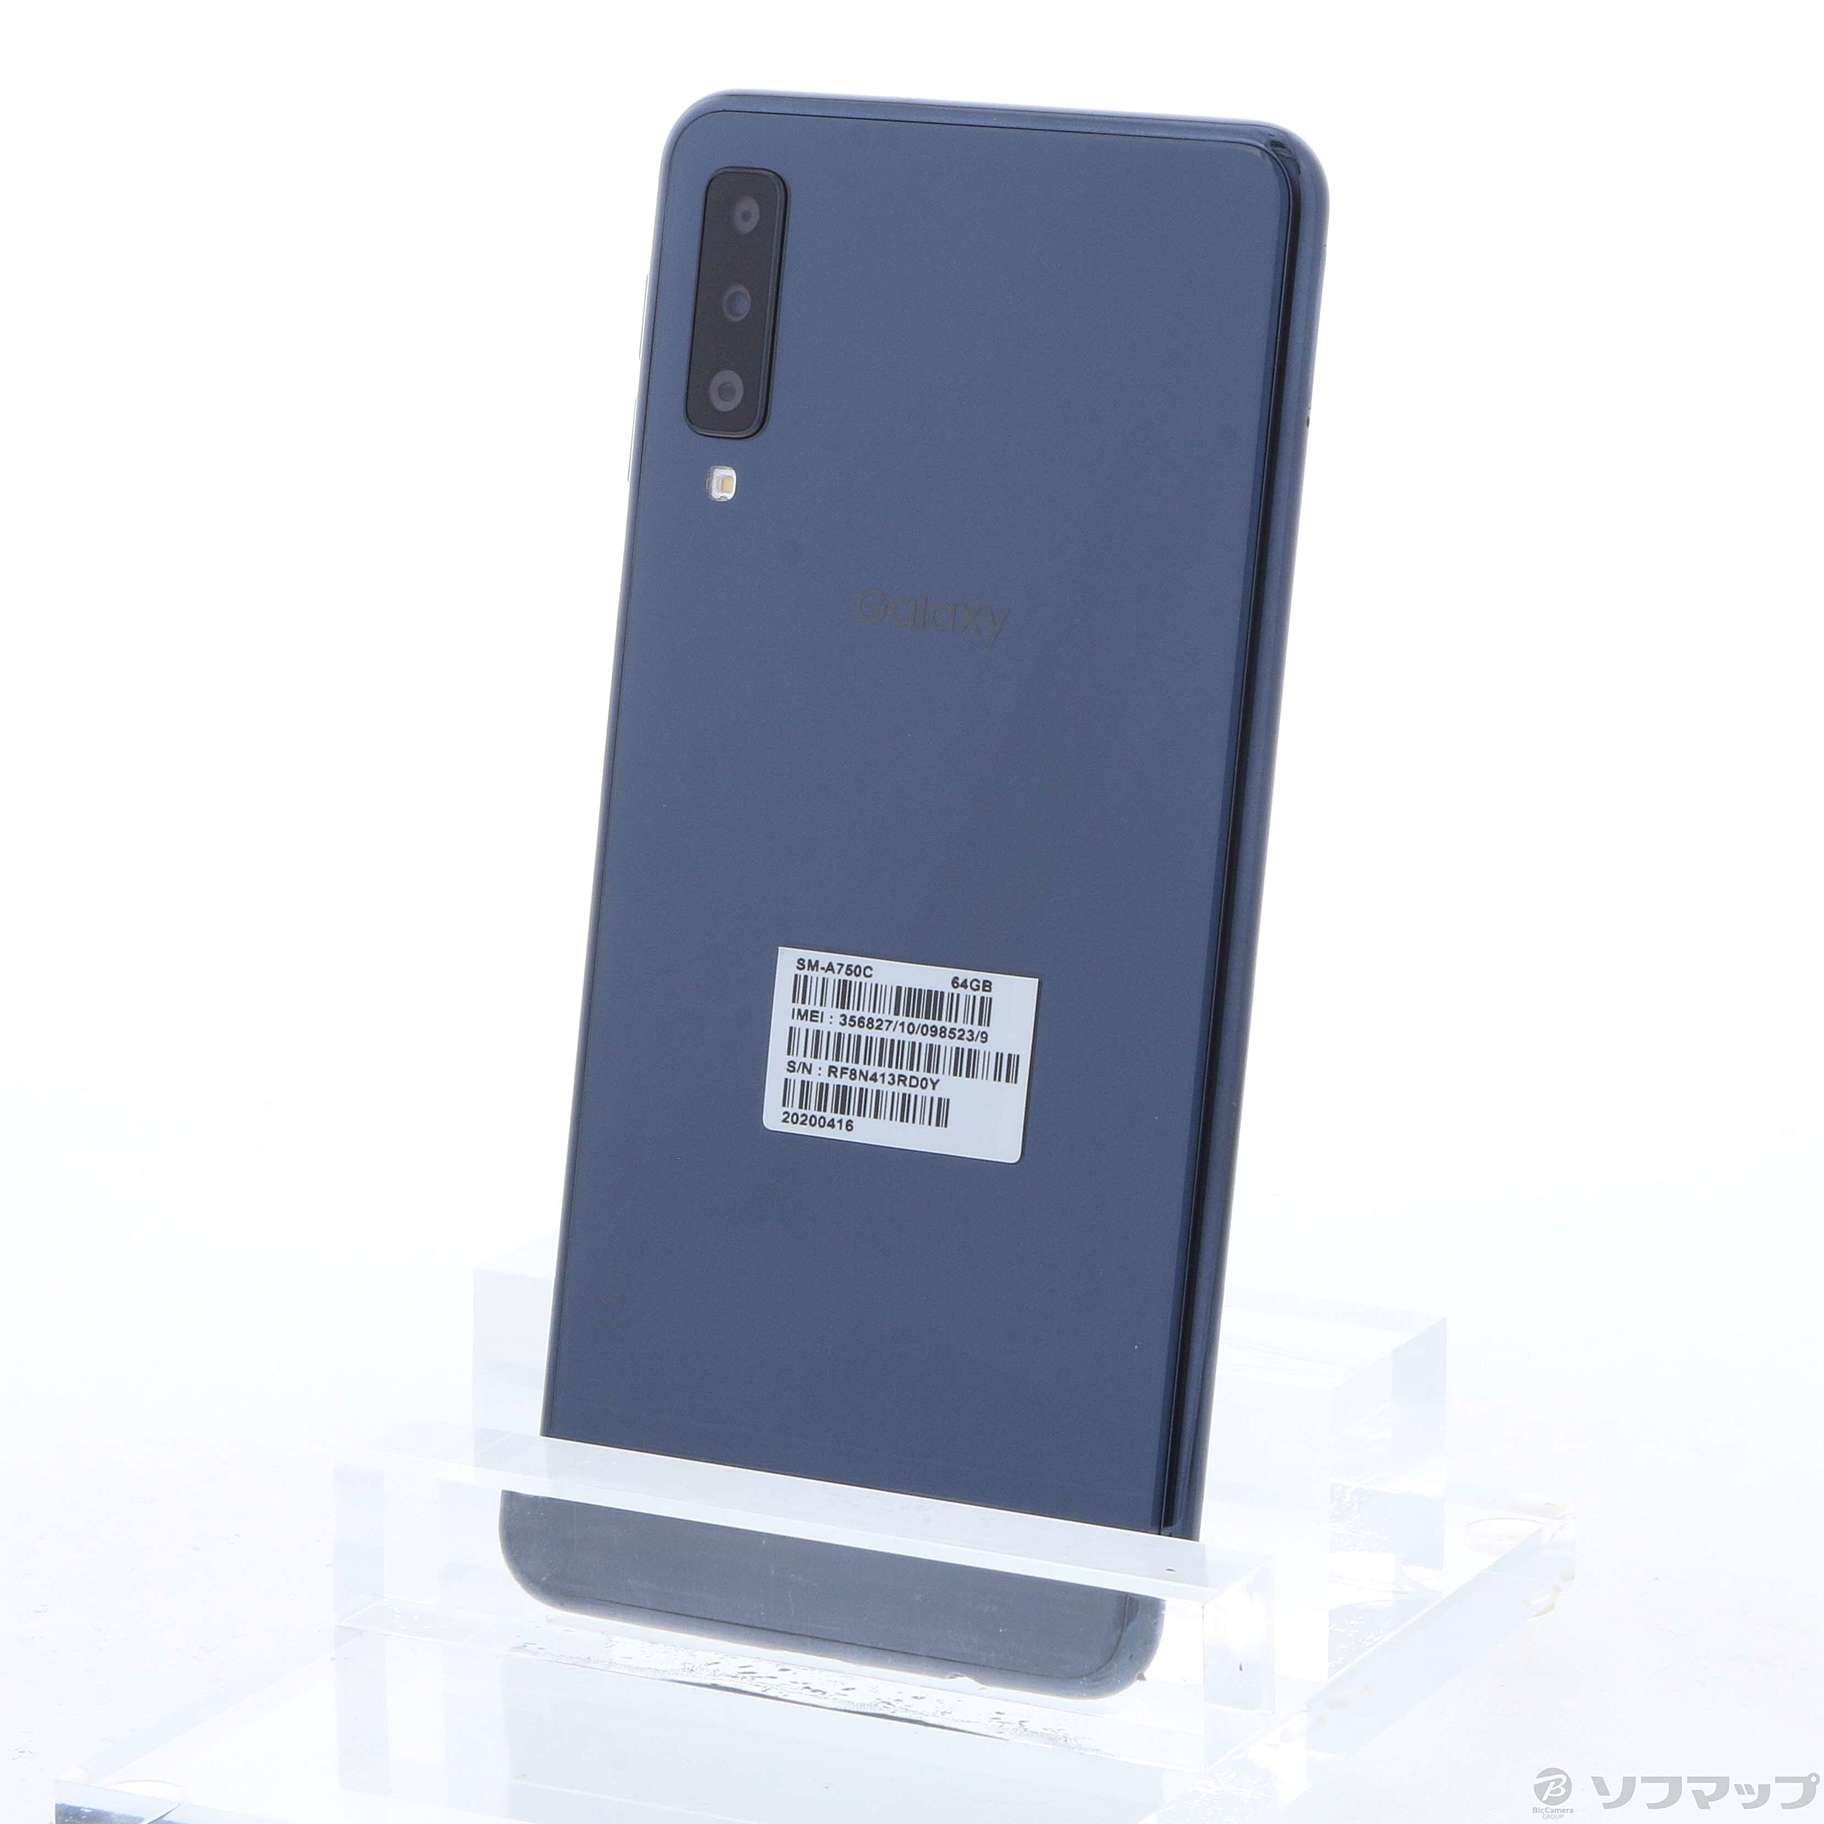 スマートフォン/携帯電話【未開封品】　Galaxy A7 64GB ブラック SM-A750C